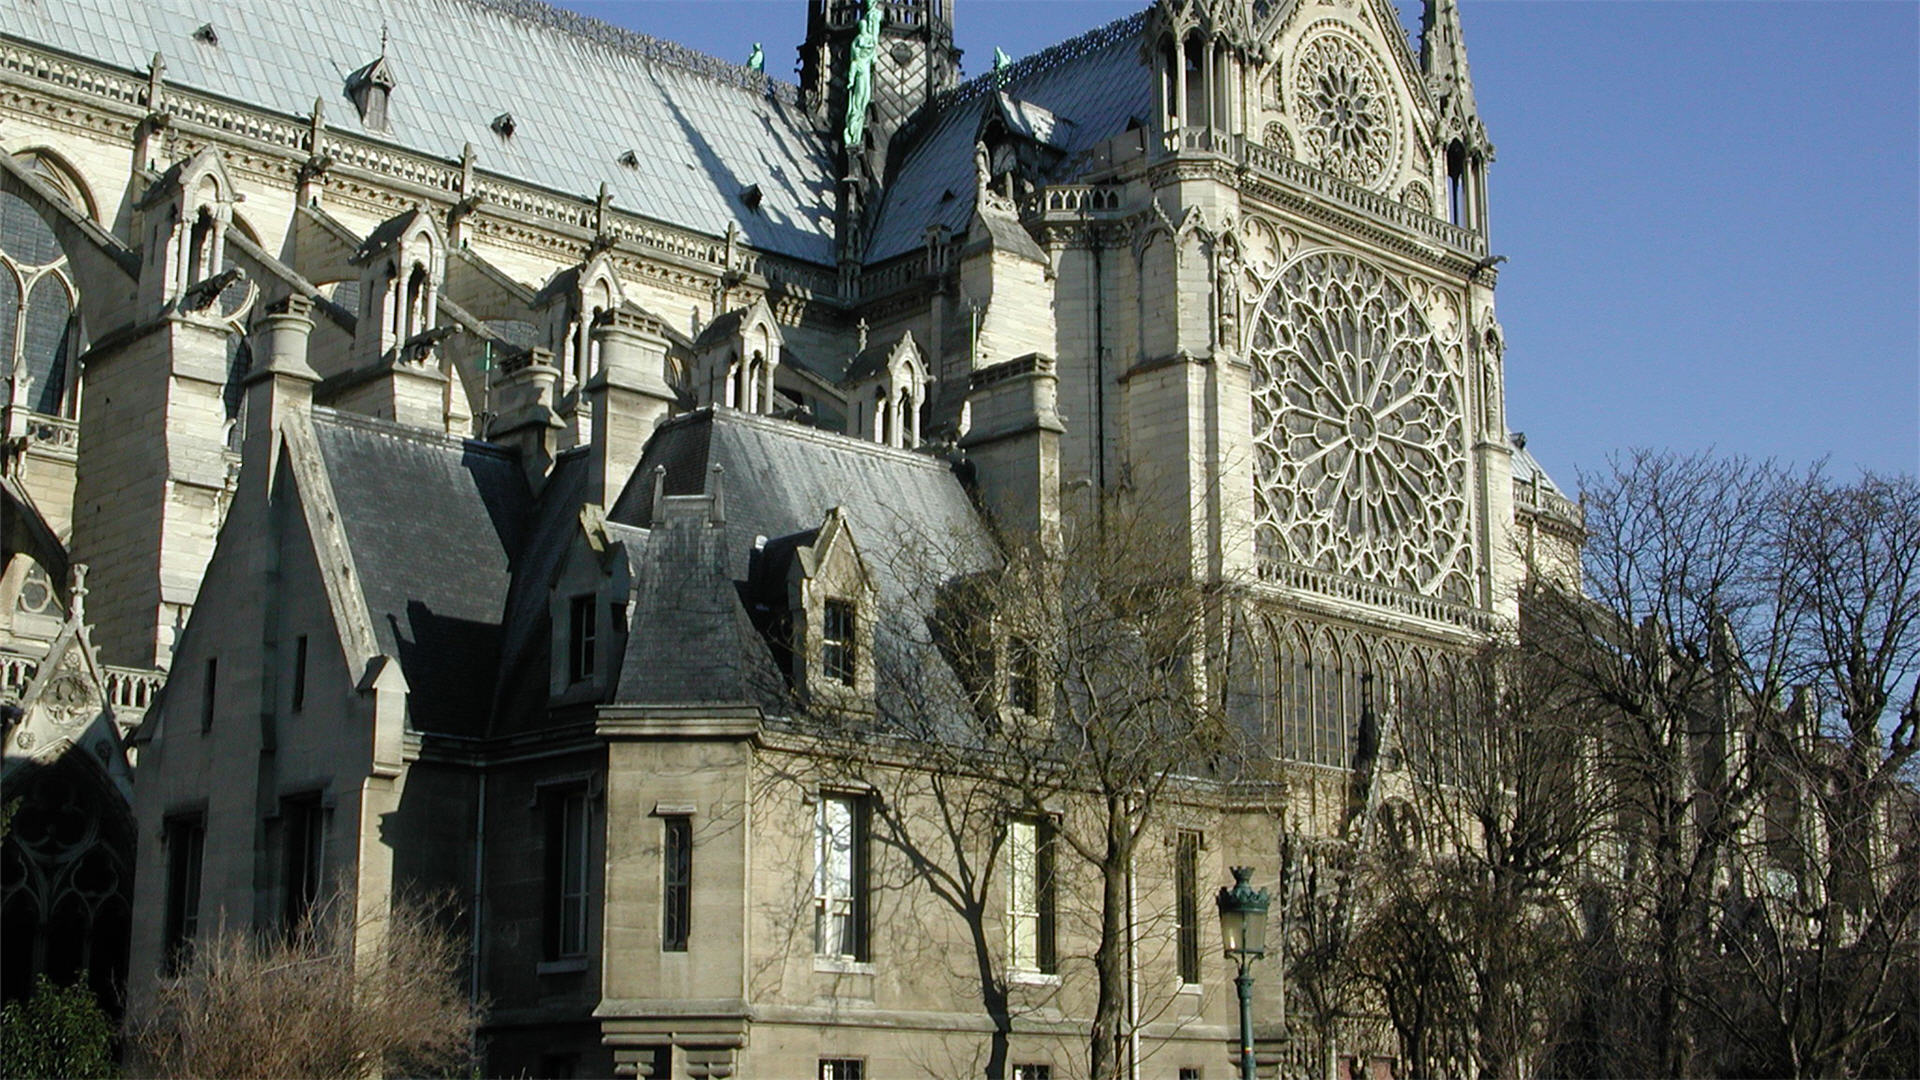 Related search Notre Dame De Paris 1920x1080 France